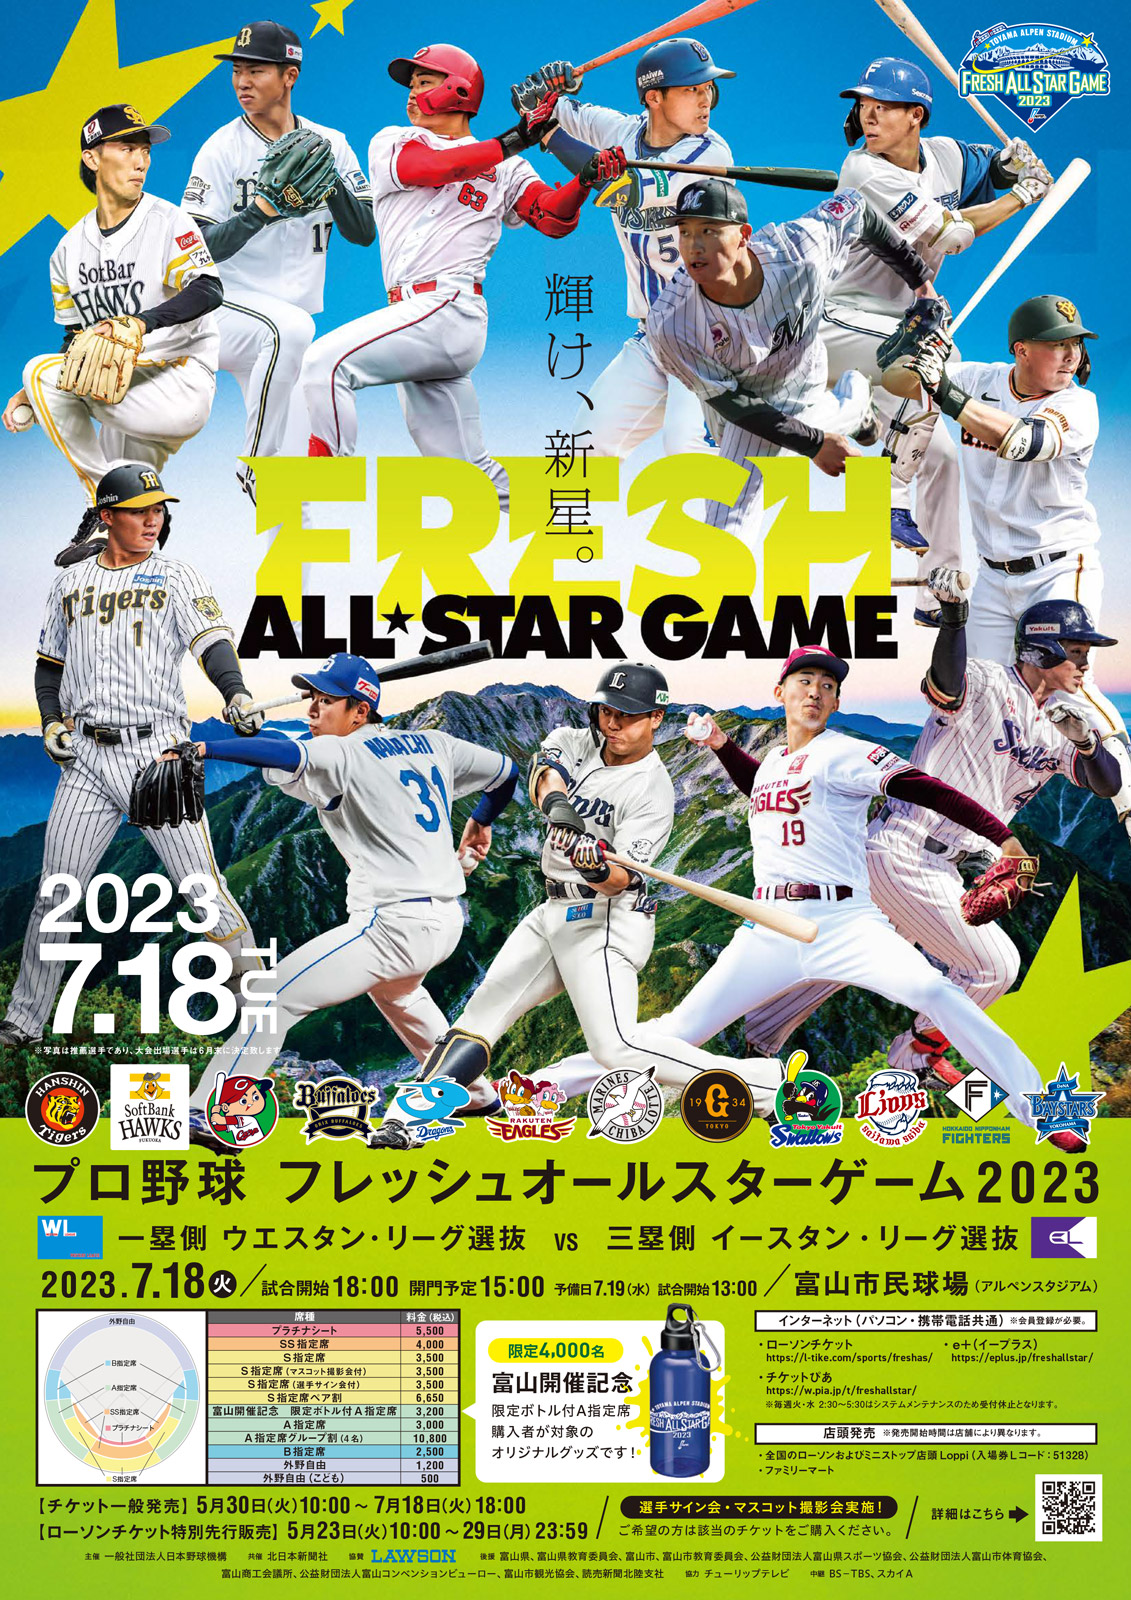 プロ野球フレッシュオールスターゲーム2023 | NPB.jp 日本野球機構